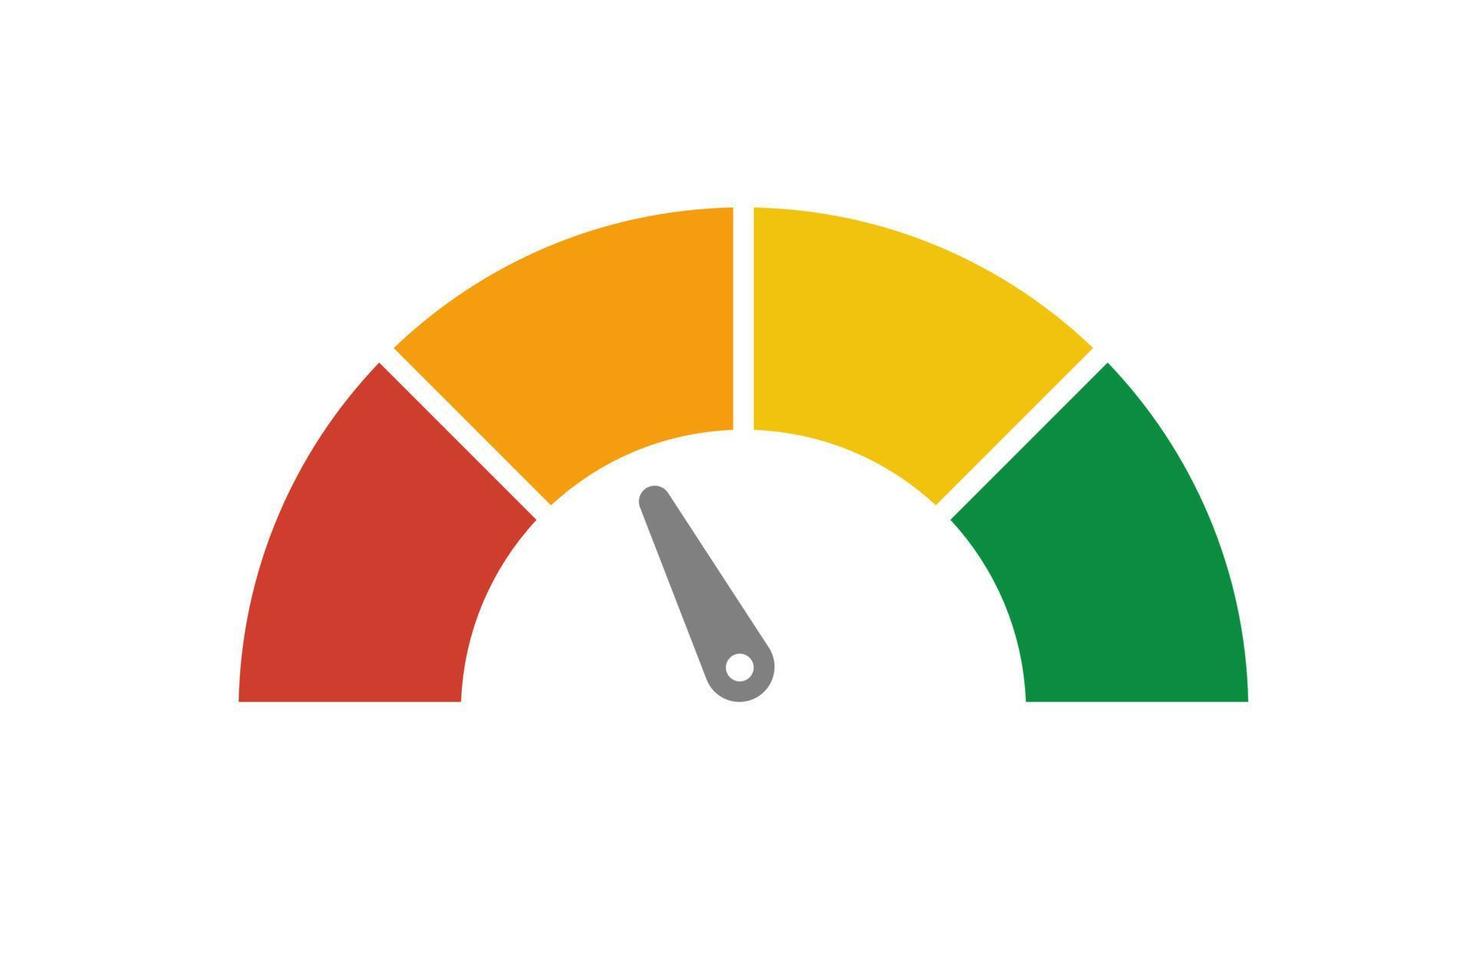 velocímetro vetorial com seta para painel com indicadores verdes, amarelos e vermelhos. calibre do tacômetro. níveis baixo, médio, alto e de risco. bitcoin índice de medo e ganância criptomoeda vetor